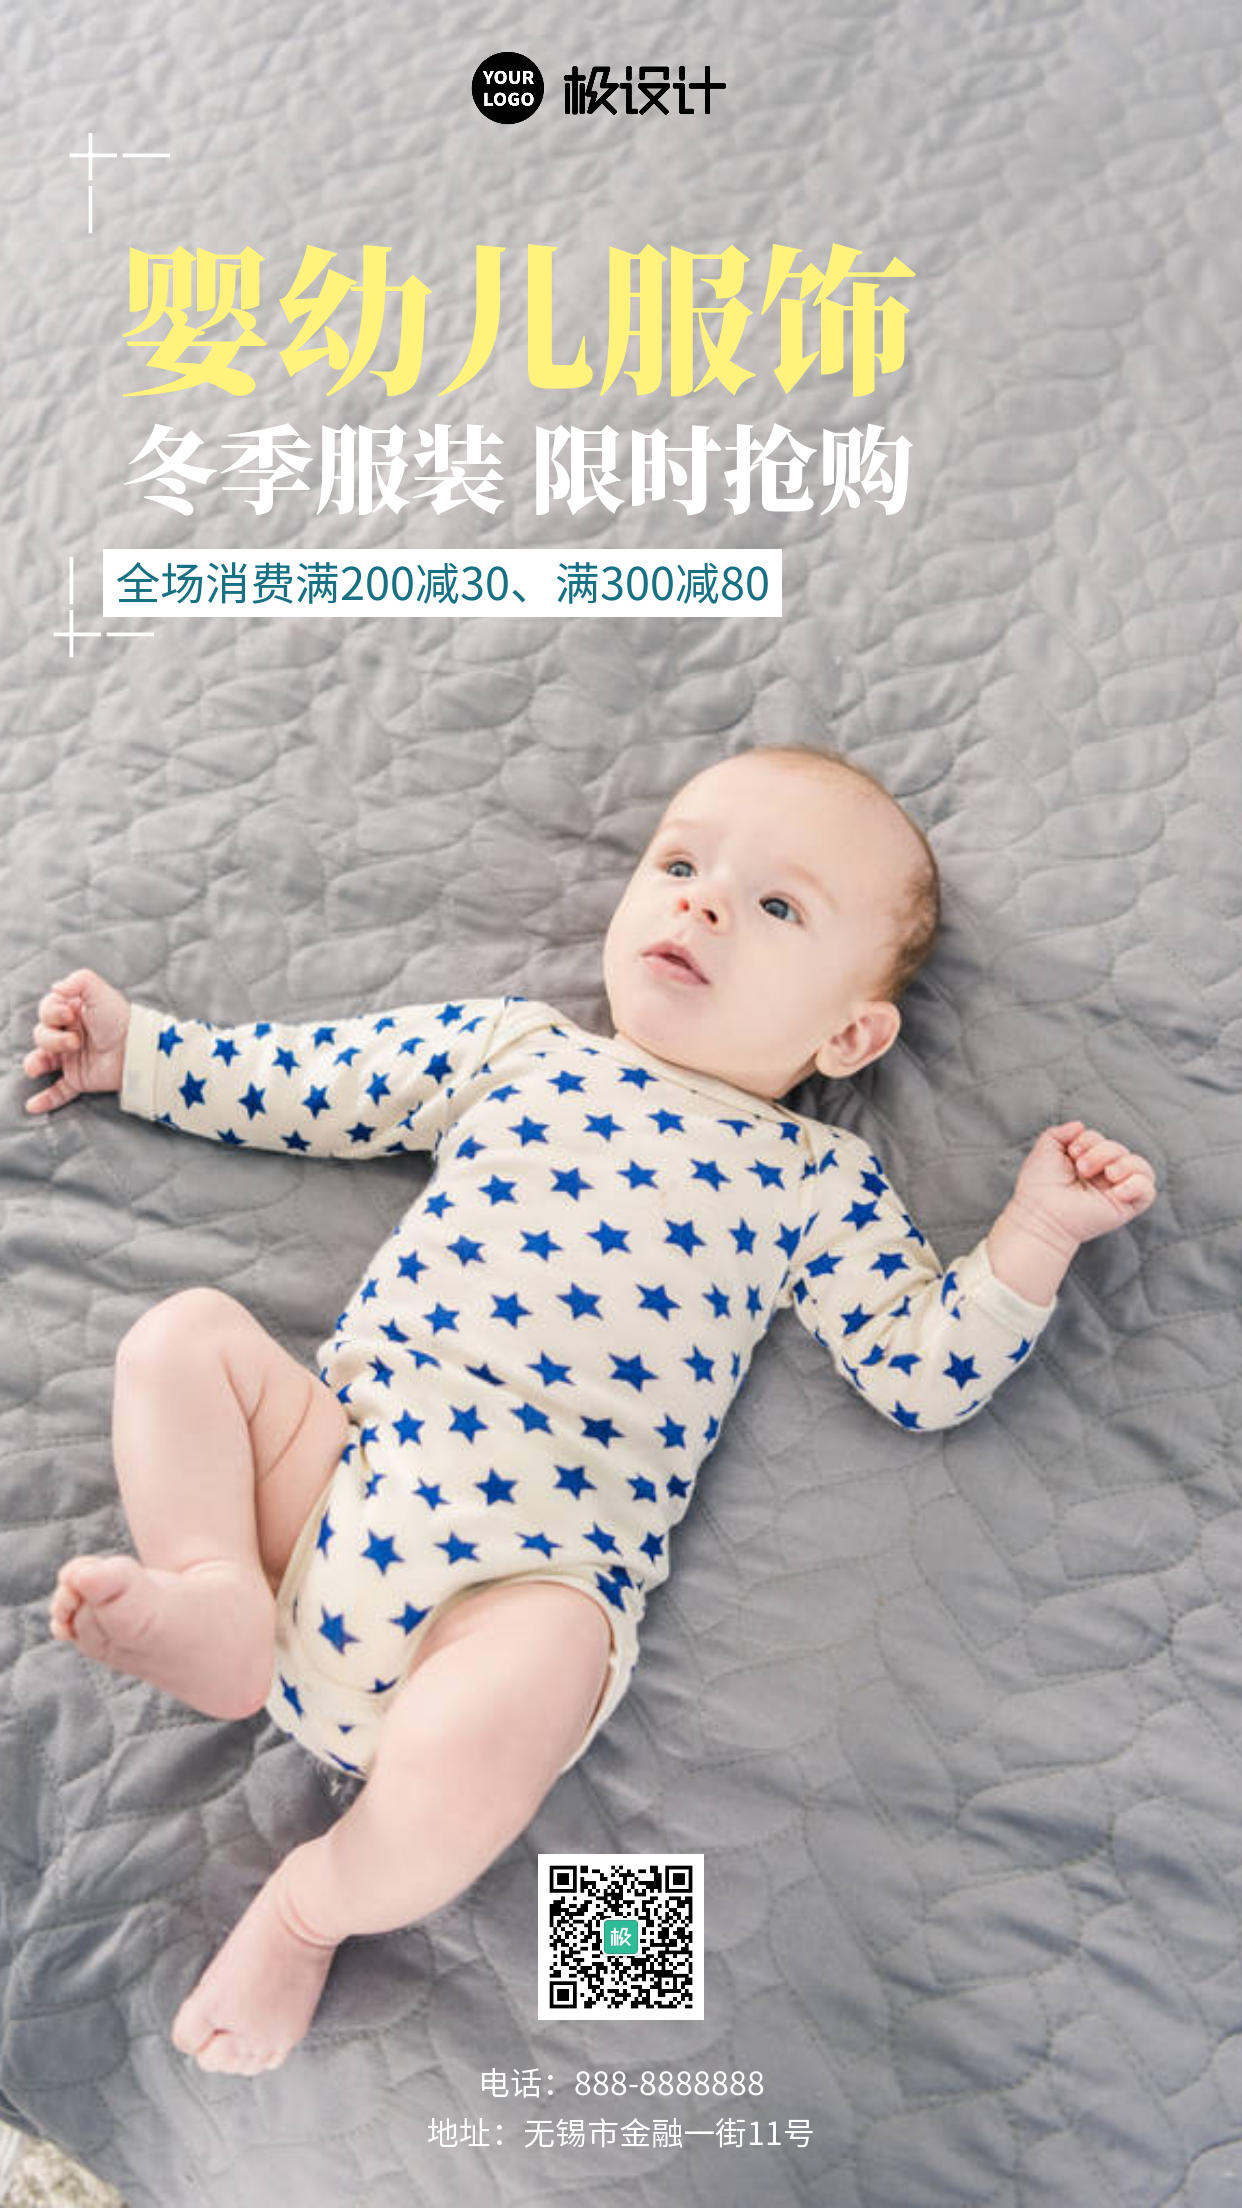 简约大气服饰婴幼儿摄影图促销手机宣传海报